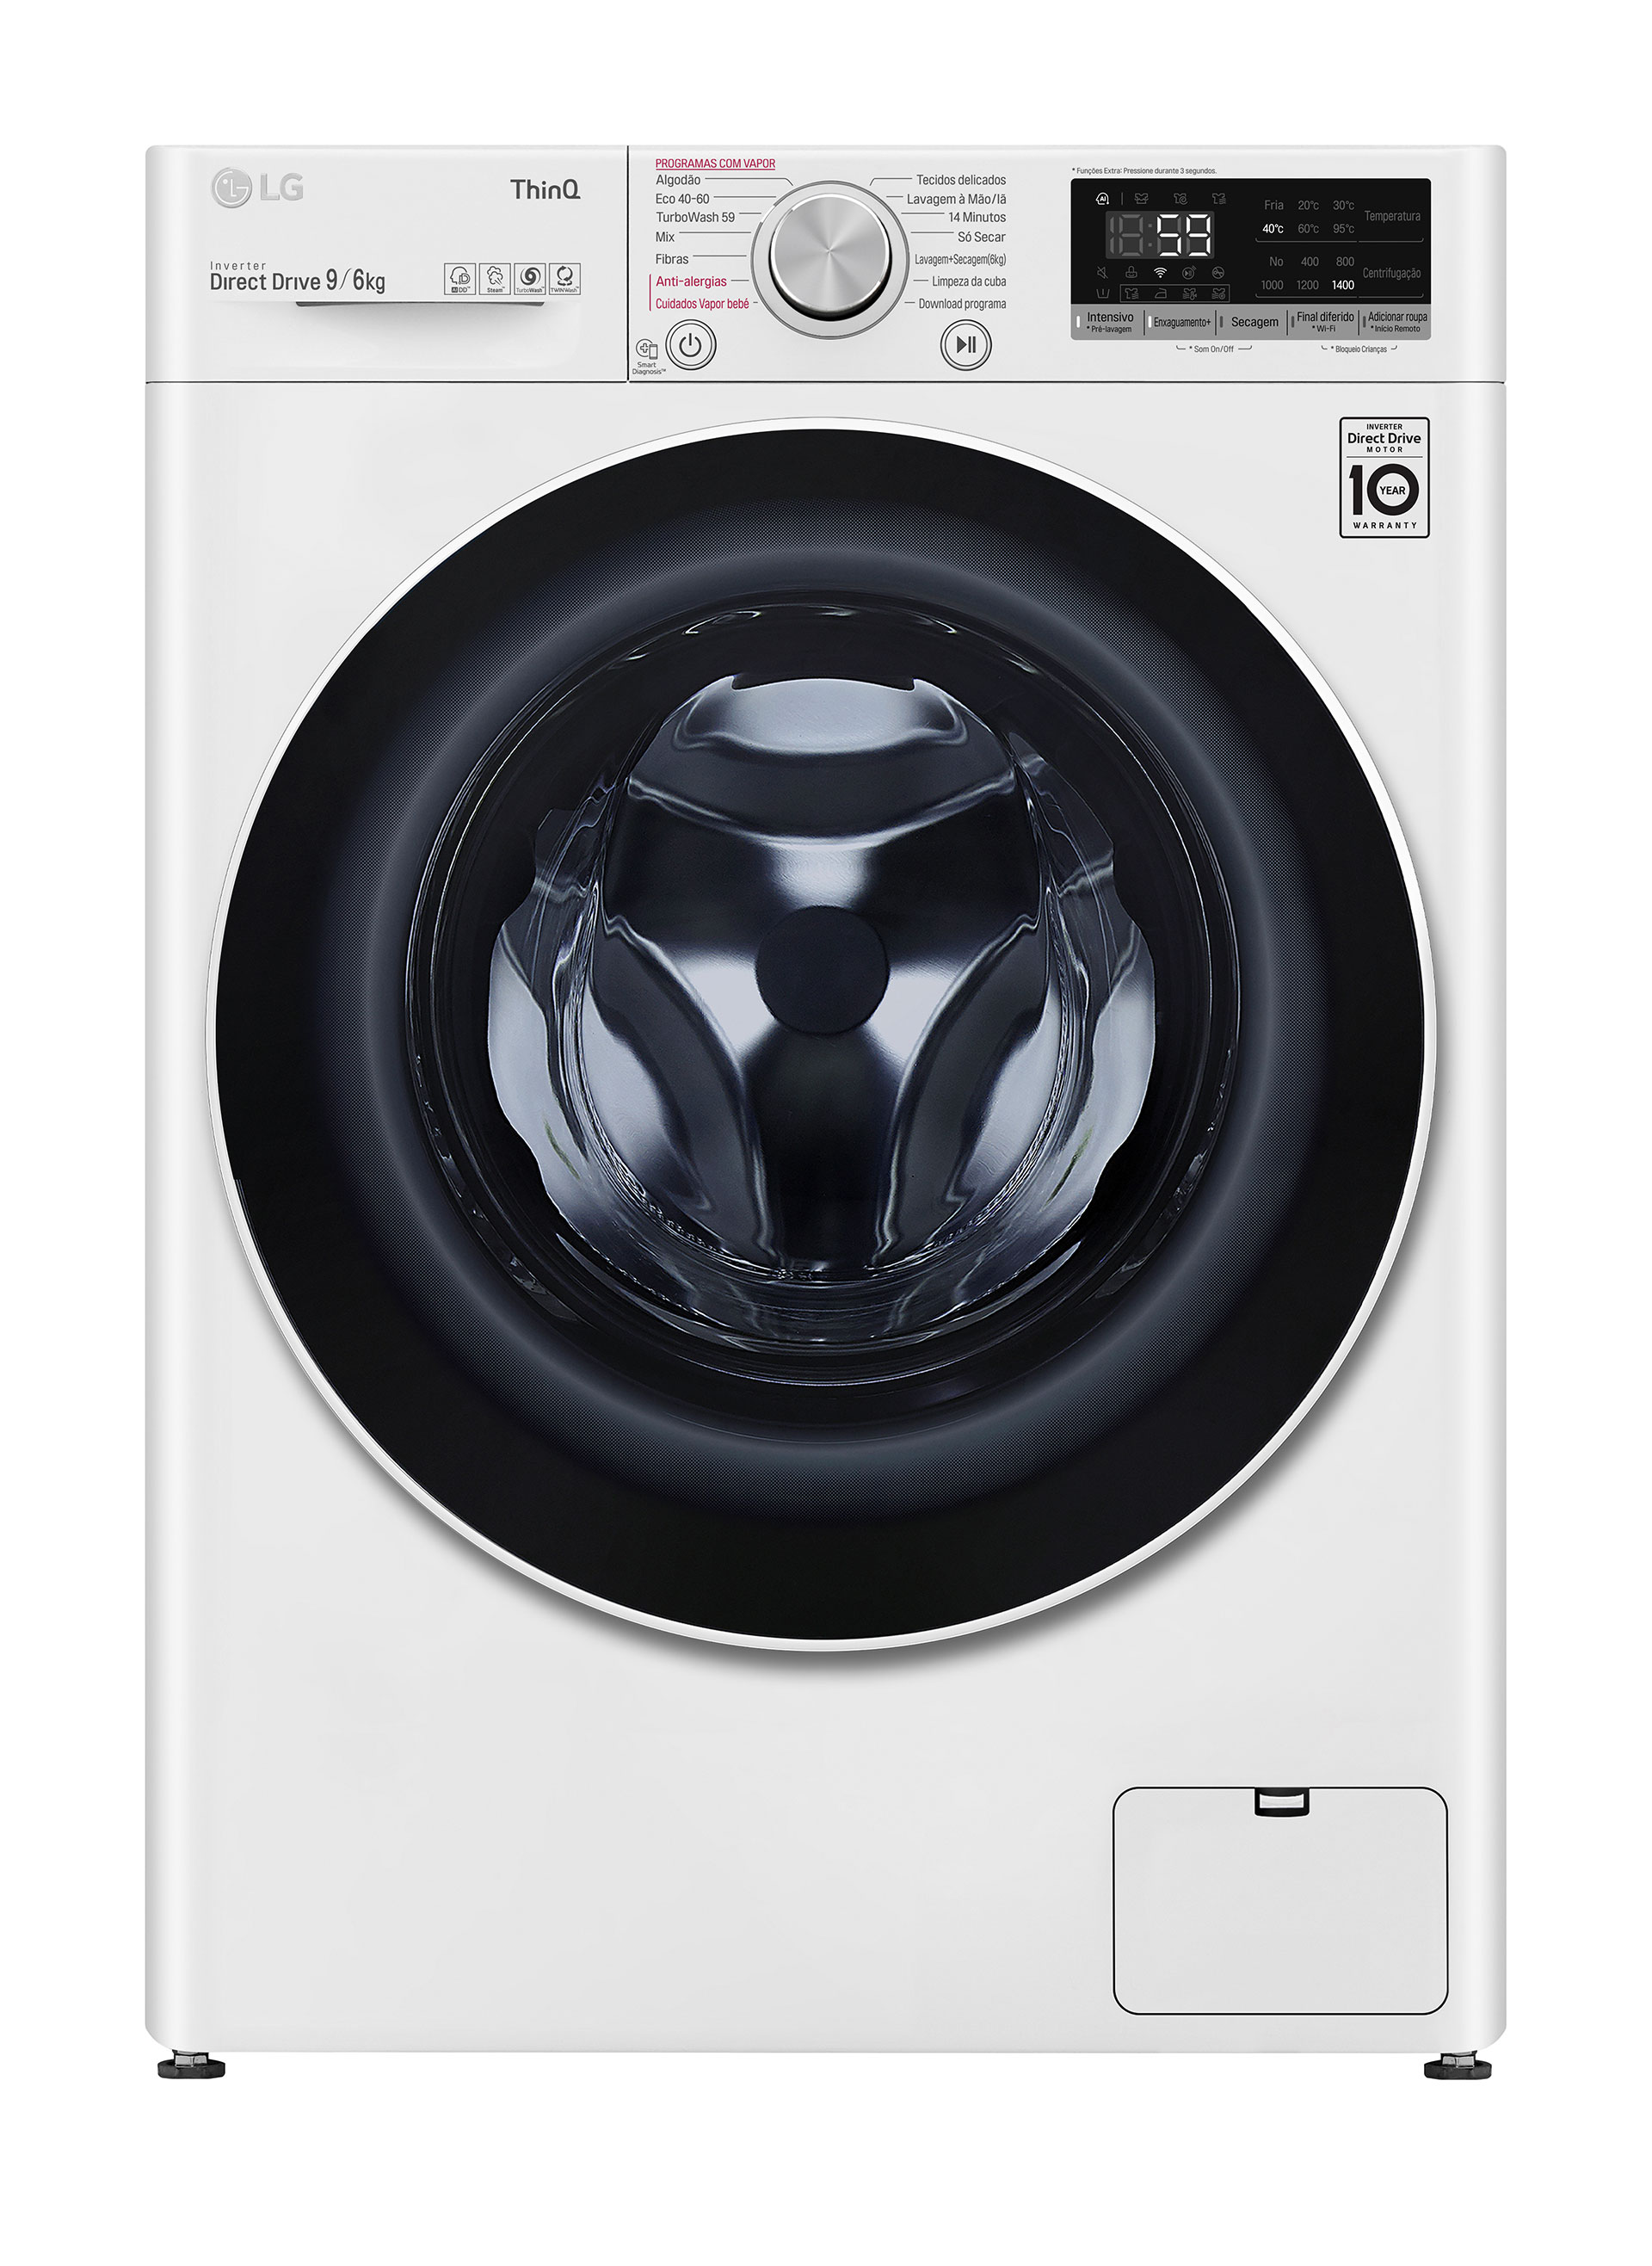 Loja EDP - Eletrodomésticos - Máquina de lavar e secar roupa LG